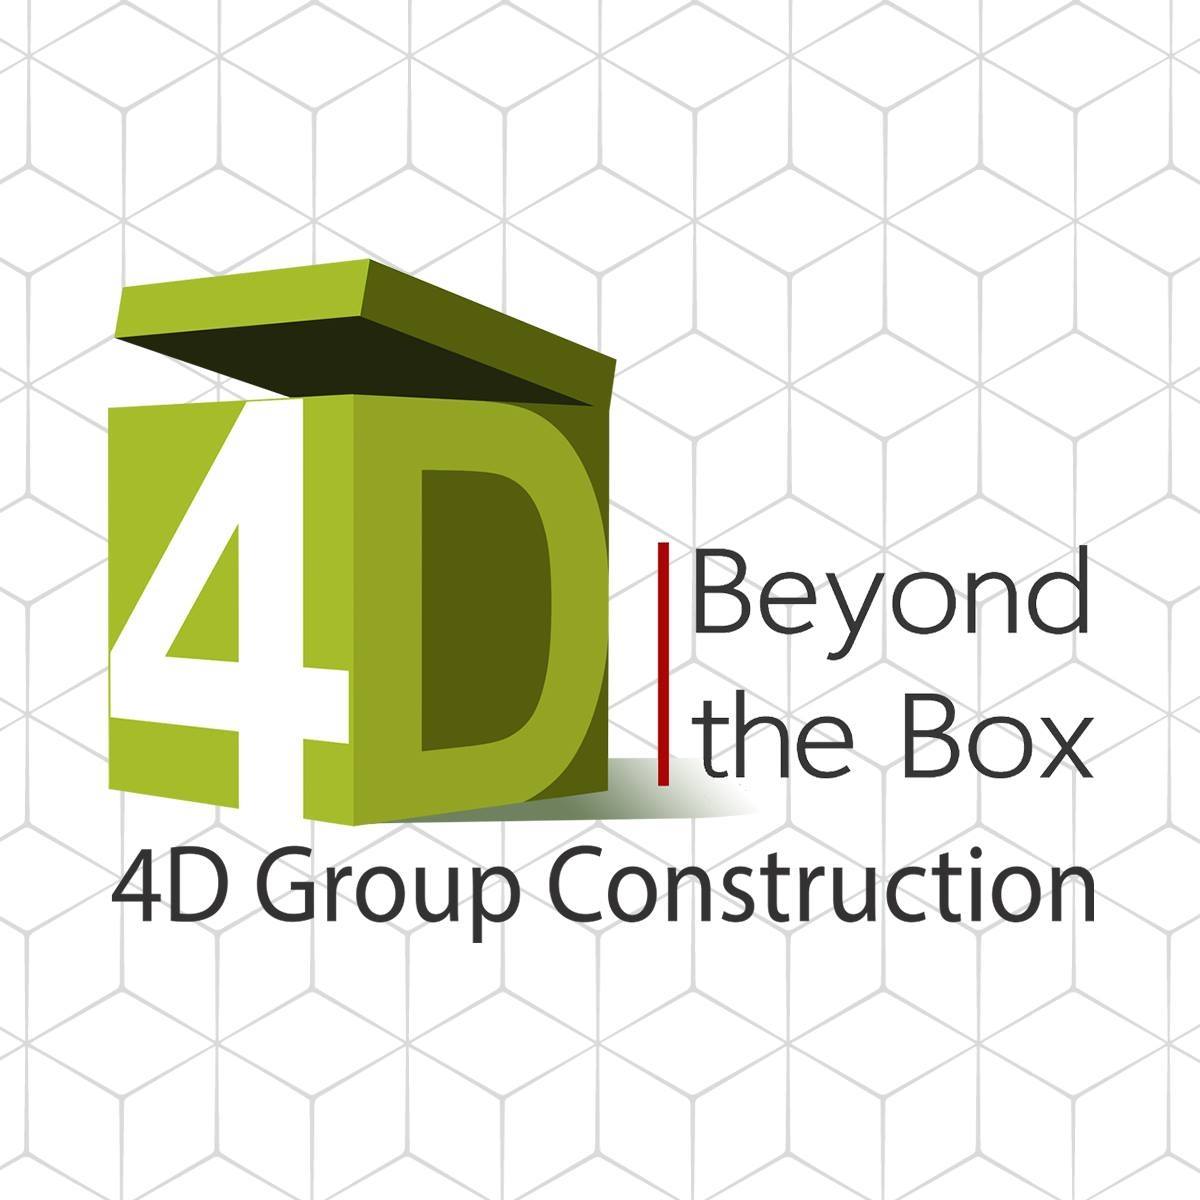 4D Group Construction